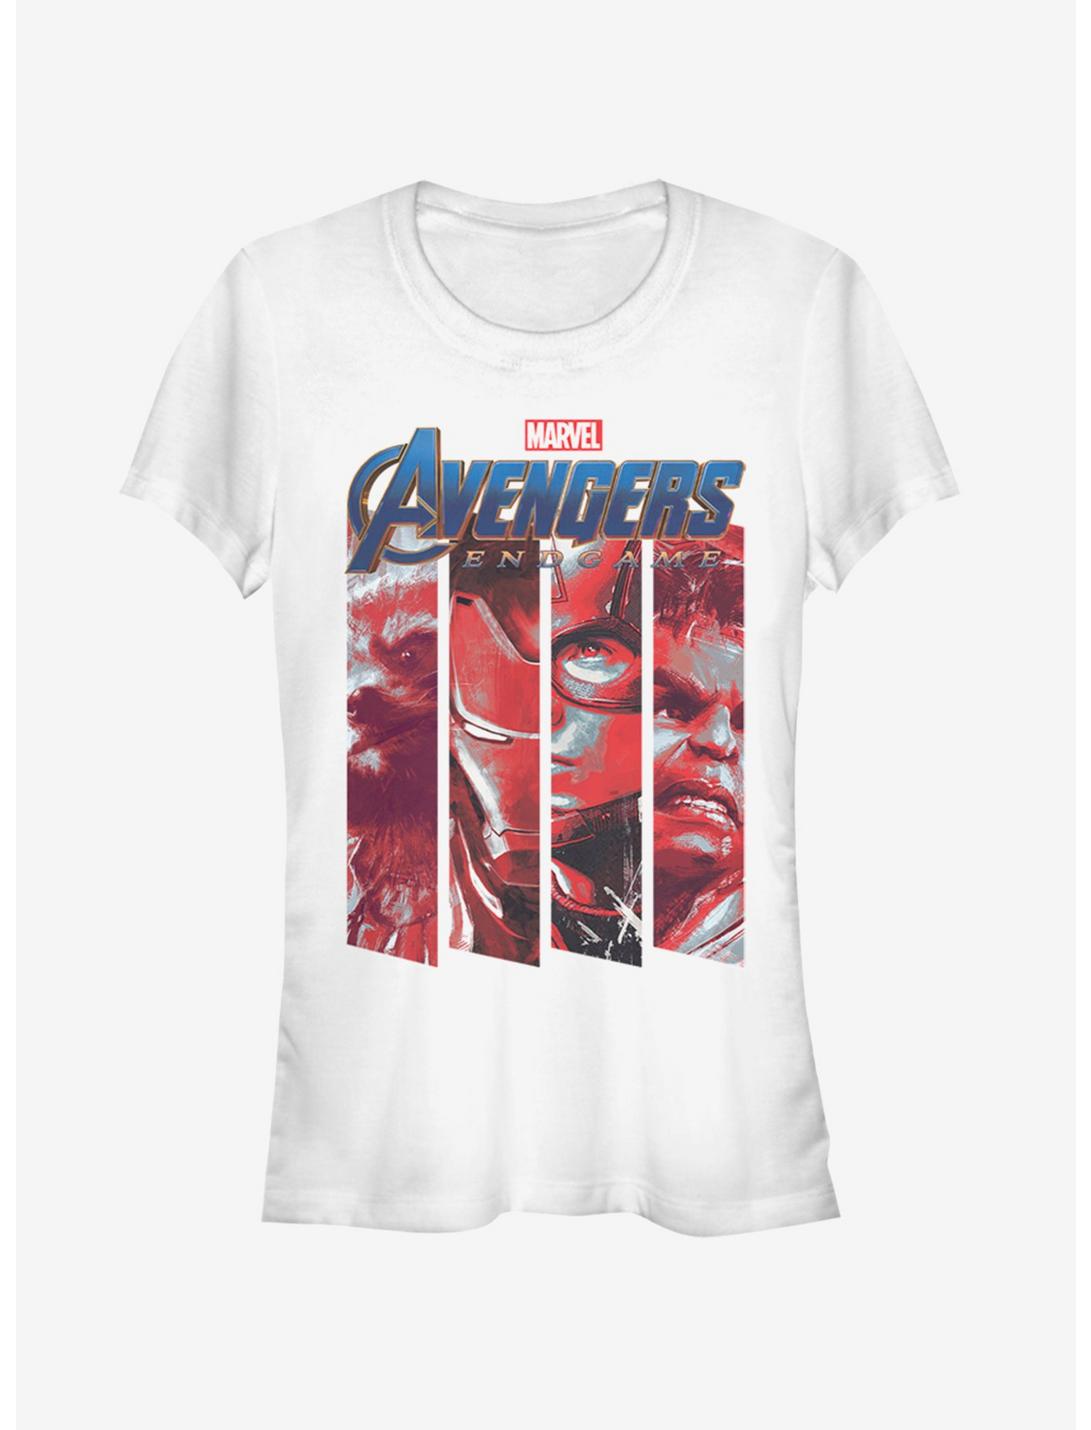 Marvel Avengers: Endgame Four Strong Girls White T-Shirt, WHITE, hi-res